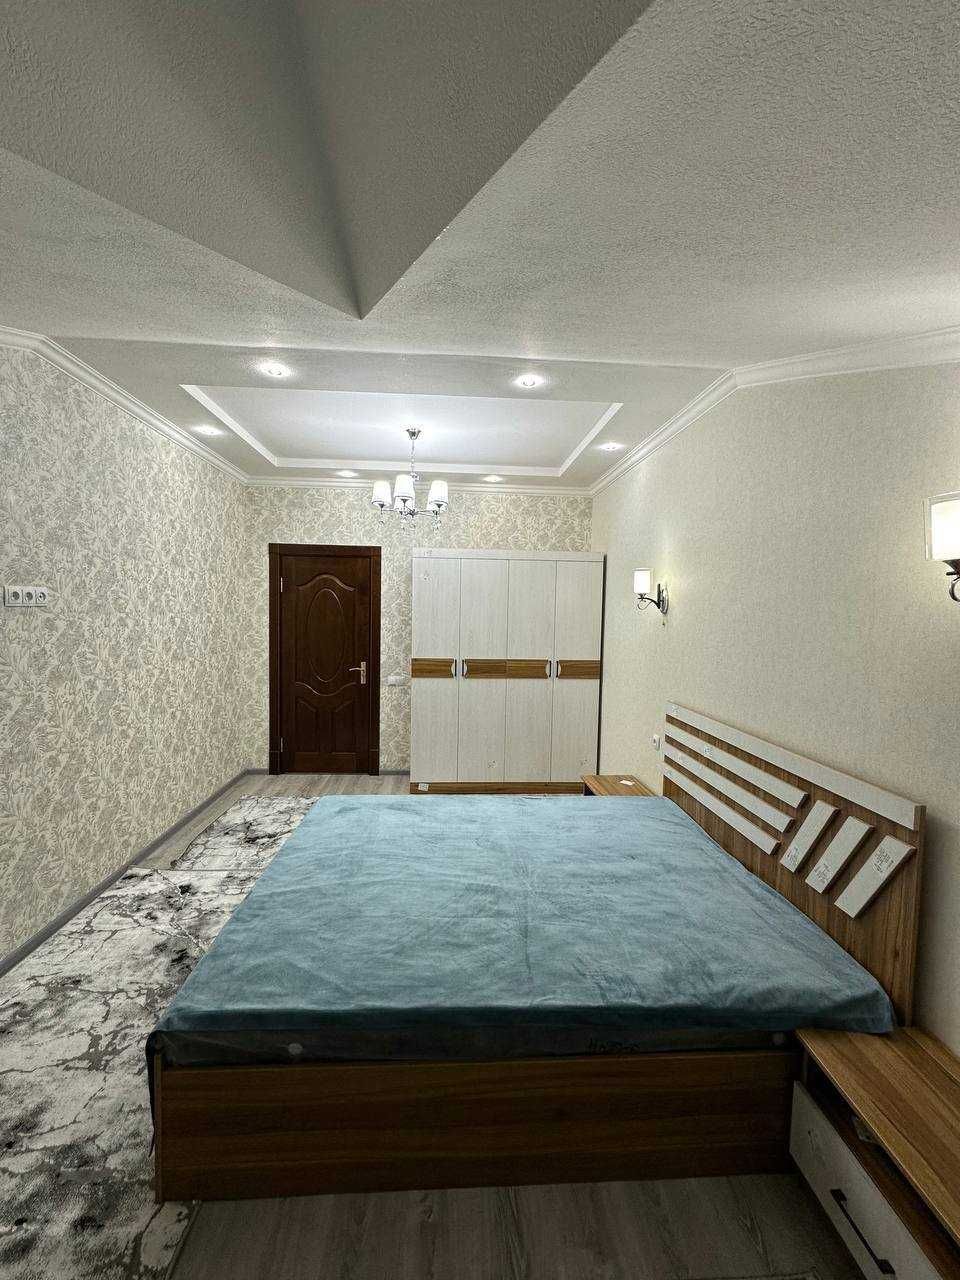 2х комнатная квартира на 6 этаже 65кв/м, в Самарканде